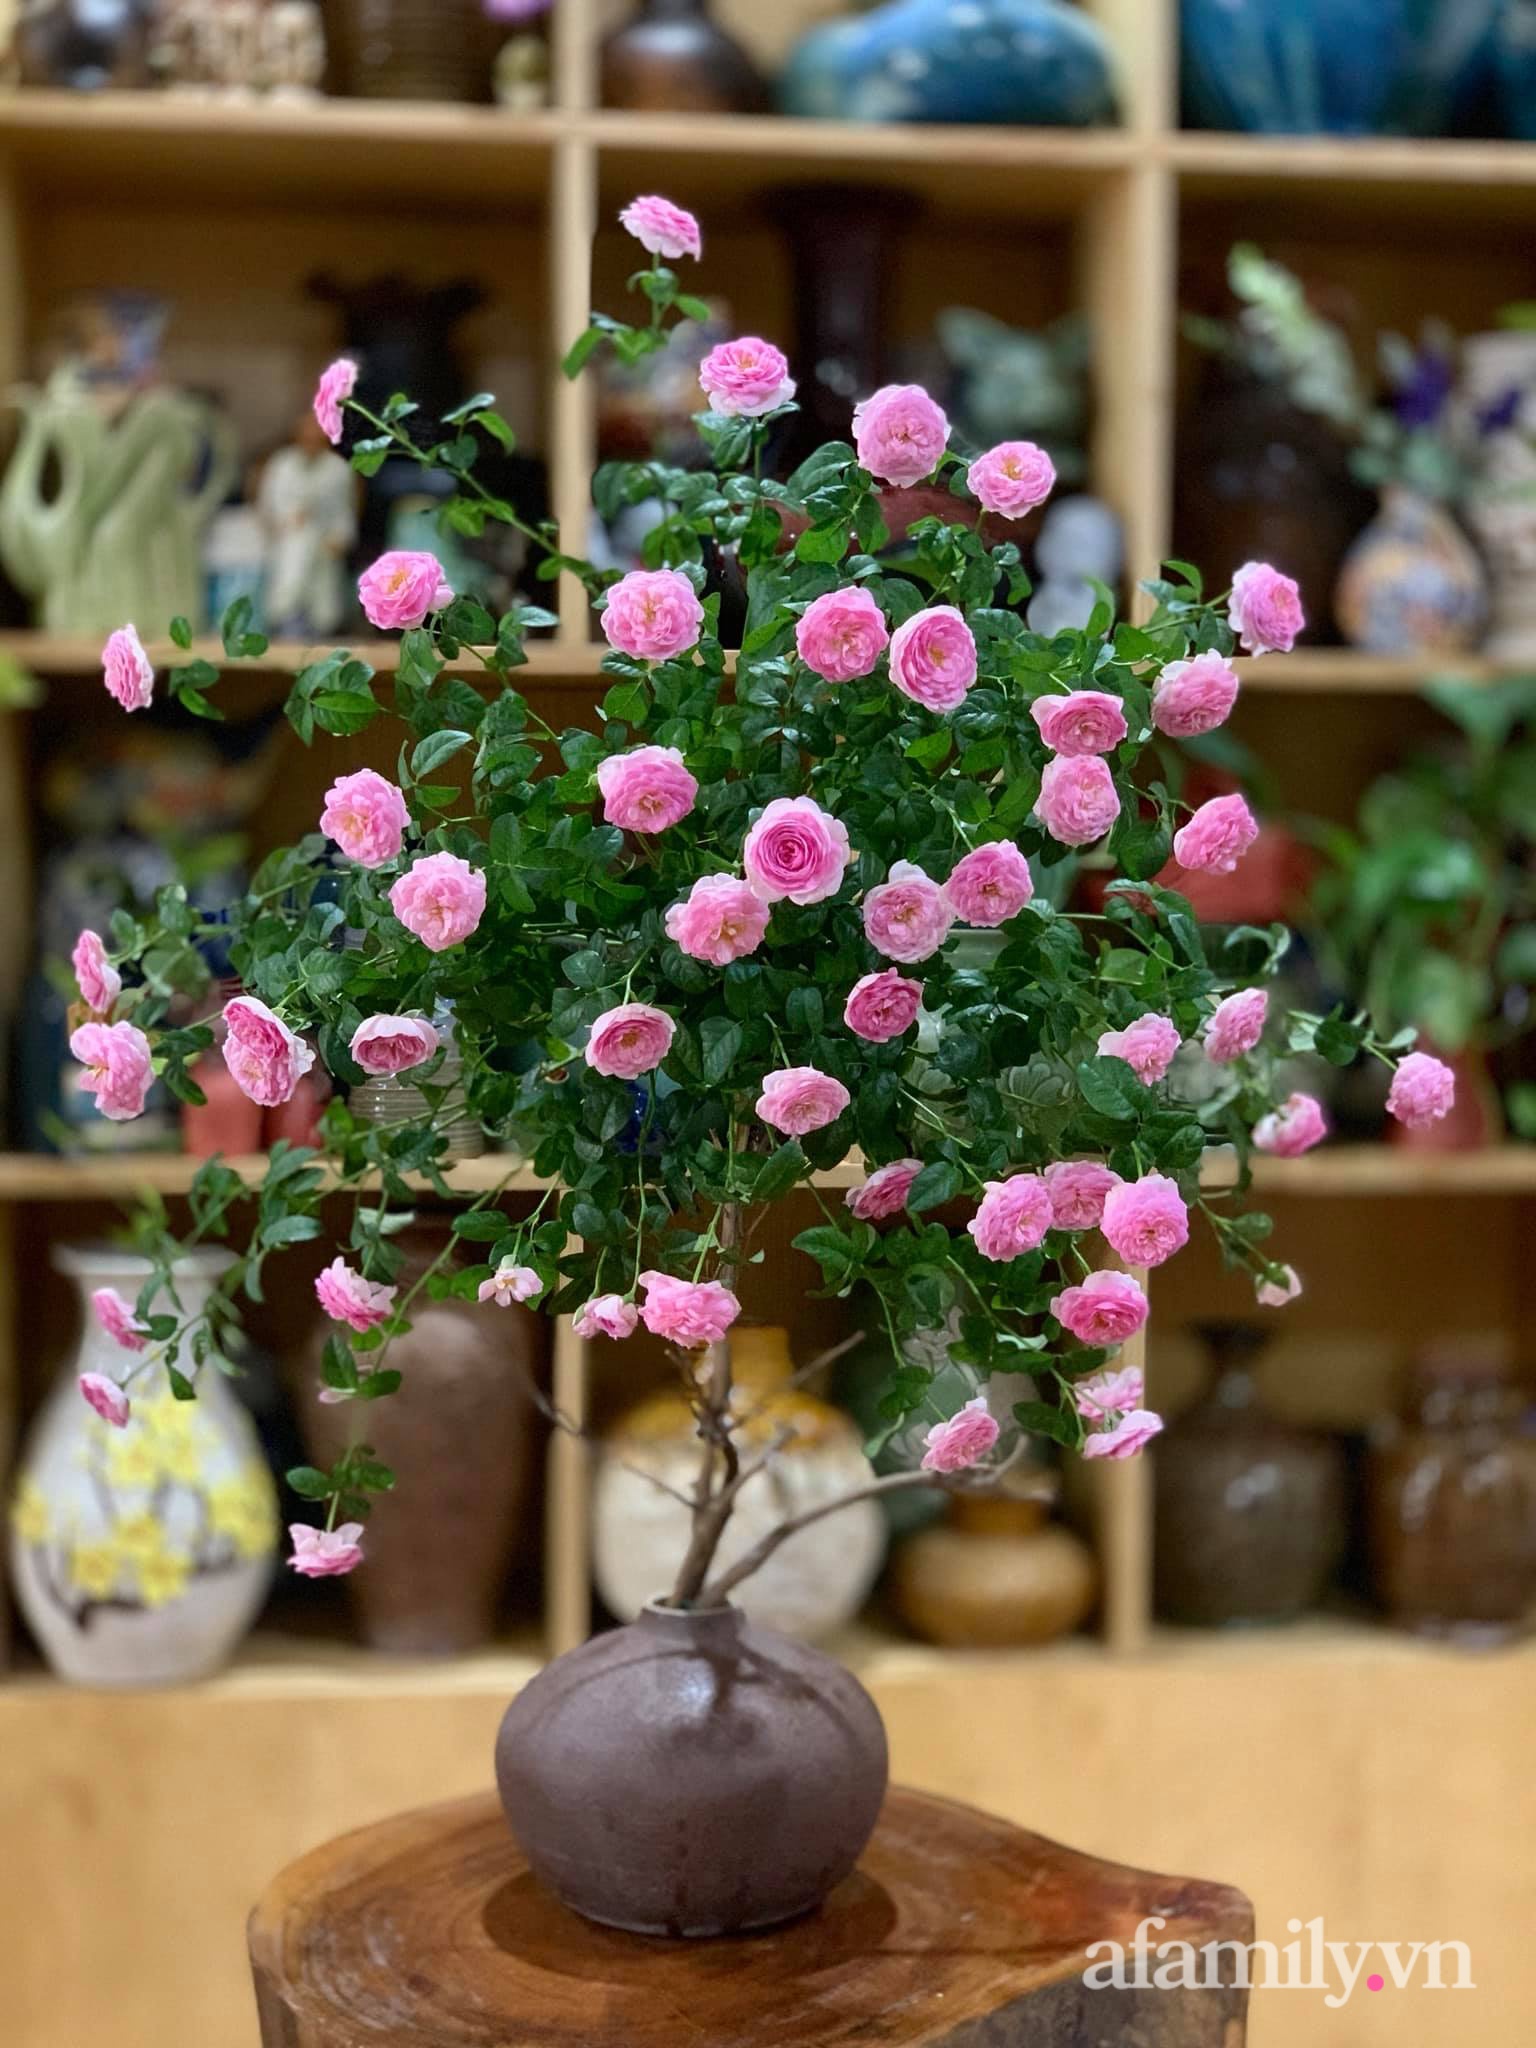 Chọn hồng cắt cành, người phụ nữ Hà Thành cắm kiểu tree rose đẹp duyên dáng không thể rời mắt - Ảnh 13.